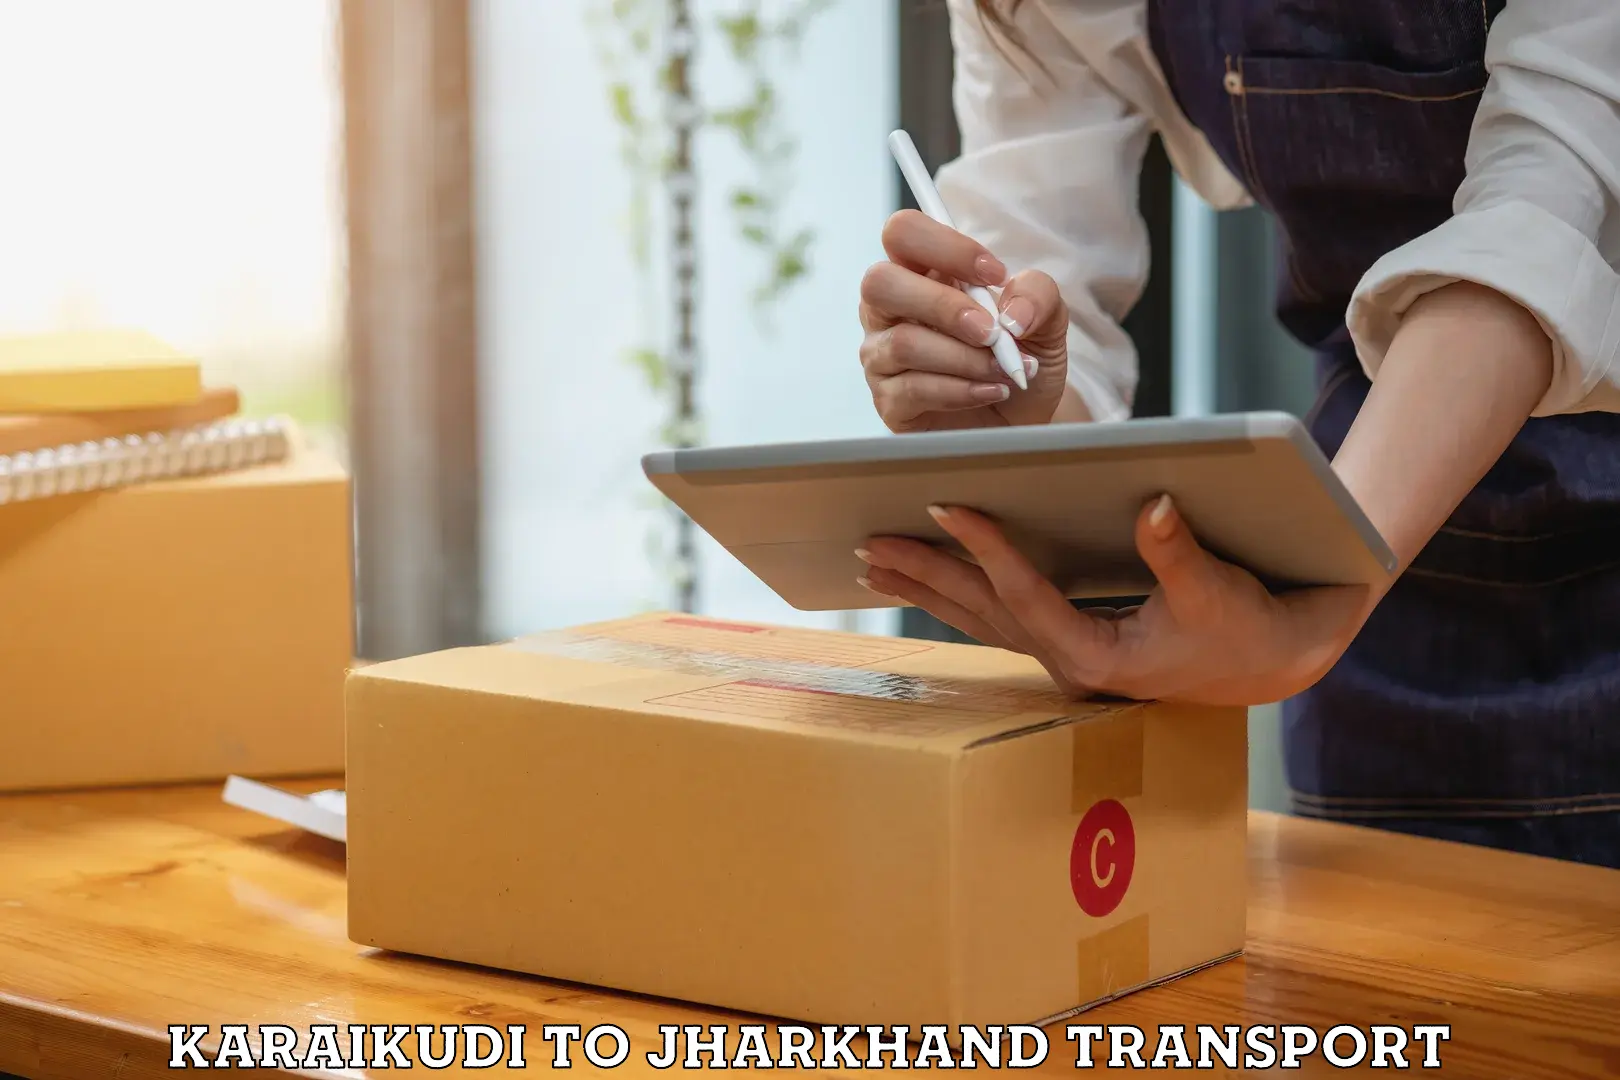 Delivery service Karaikudi to Chandil